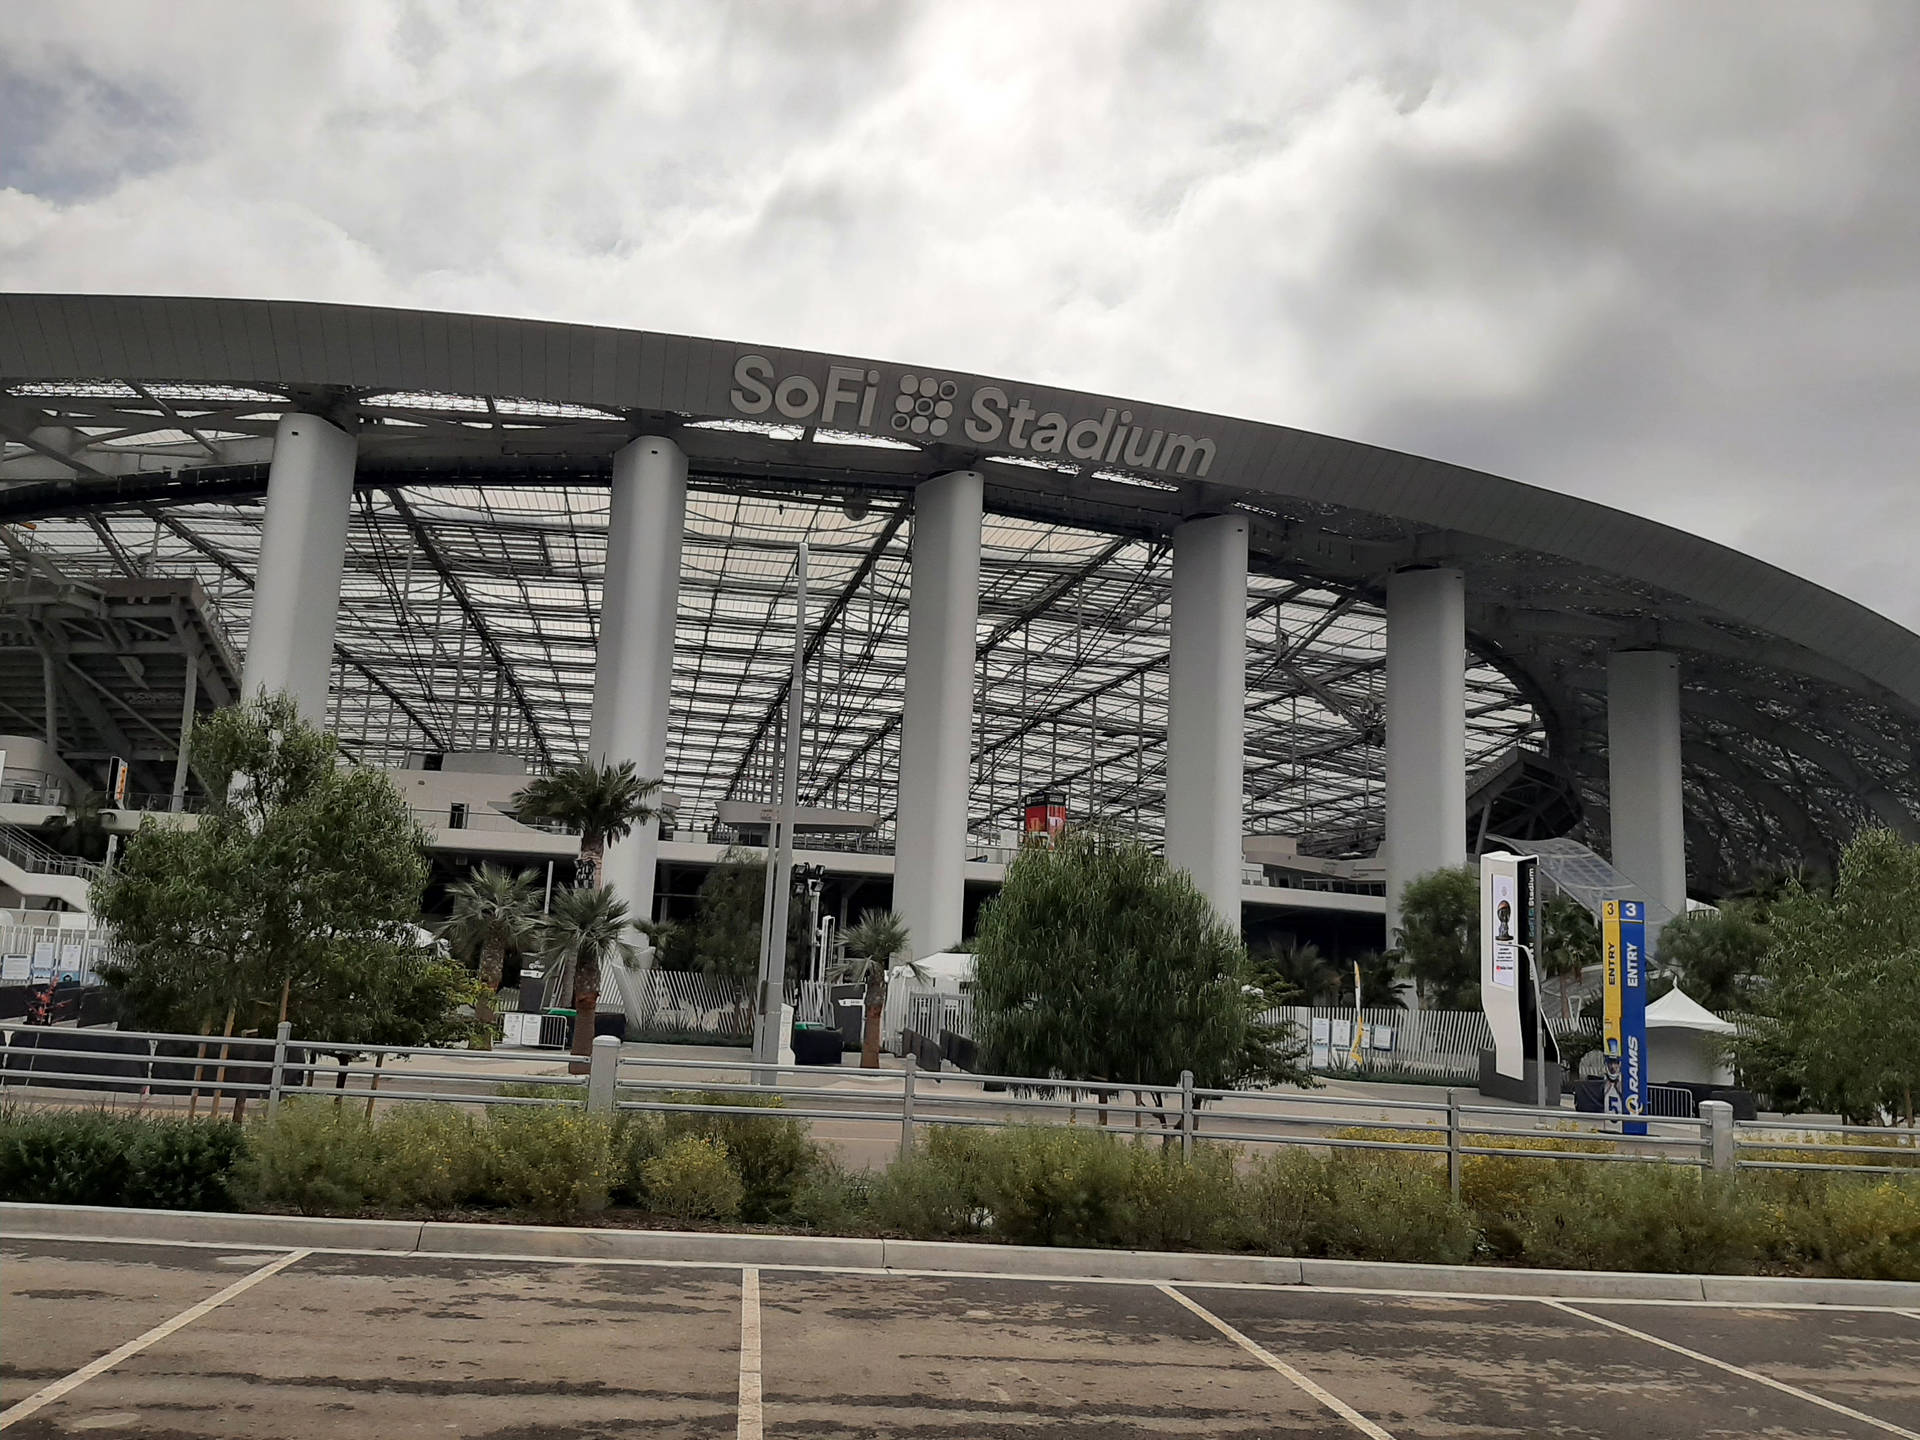 Sofi Stadium Nfl Football Venue Background